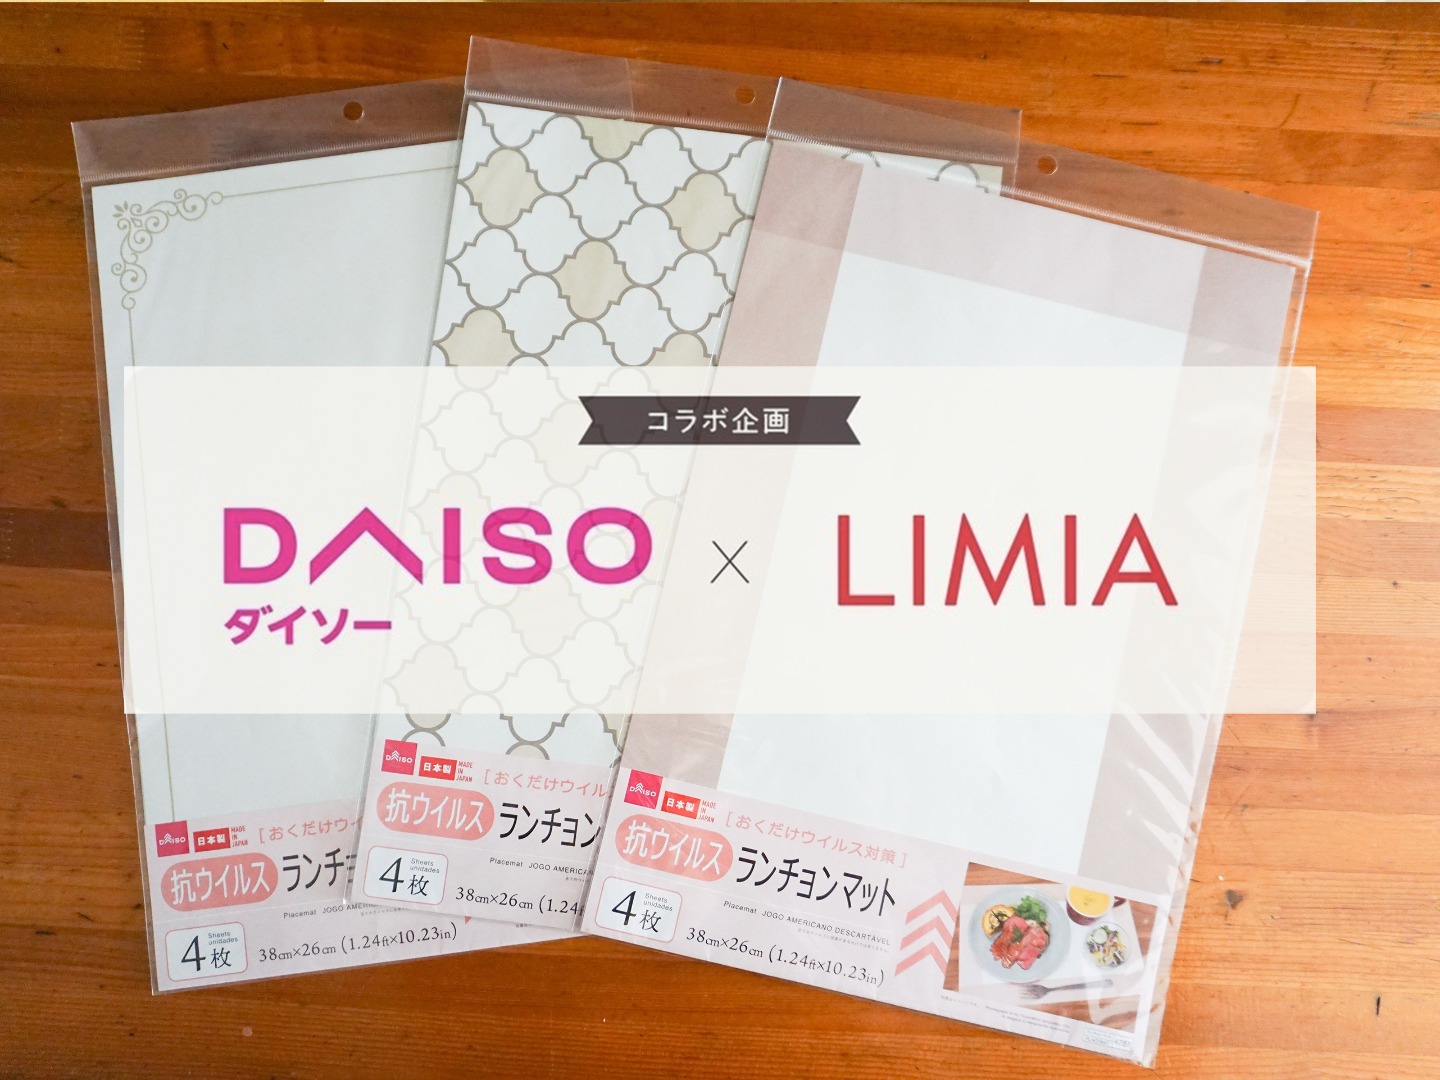 ダイソー Limia 紙製ランチョンマットが気軽に使えて便利 Limia リミア